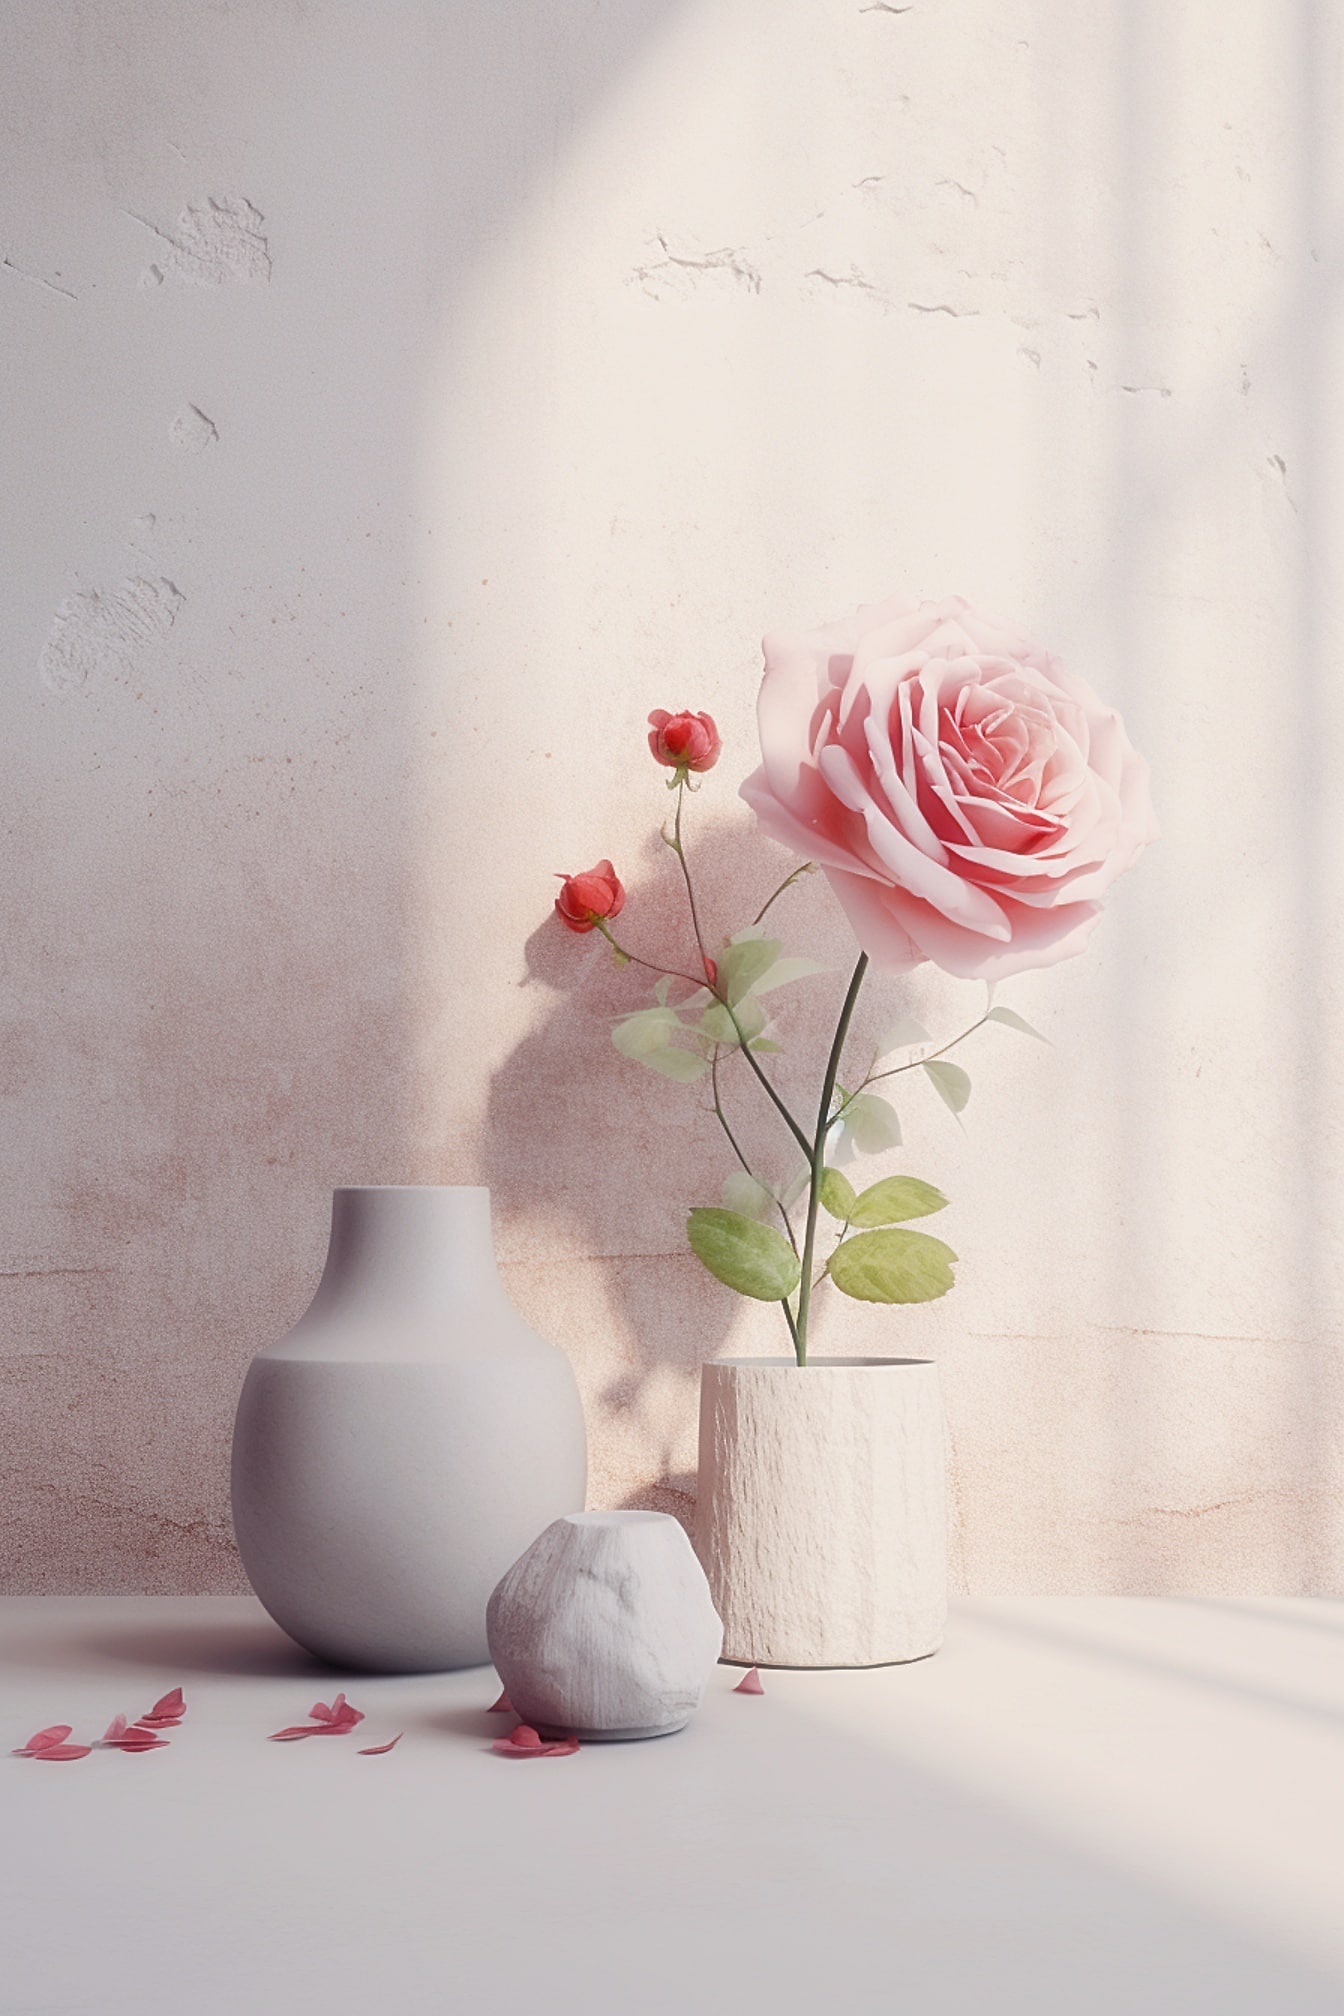 또 다른 빈 꽃병과 함께 흰 돌 꽃병에 분홍색 장미